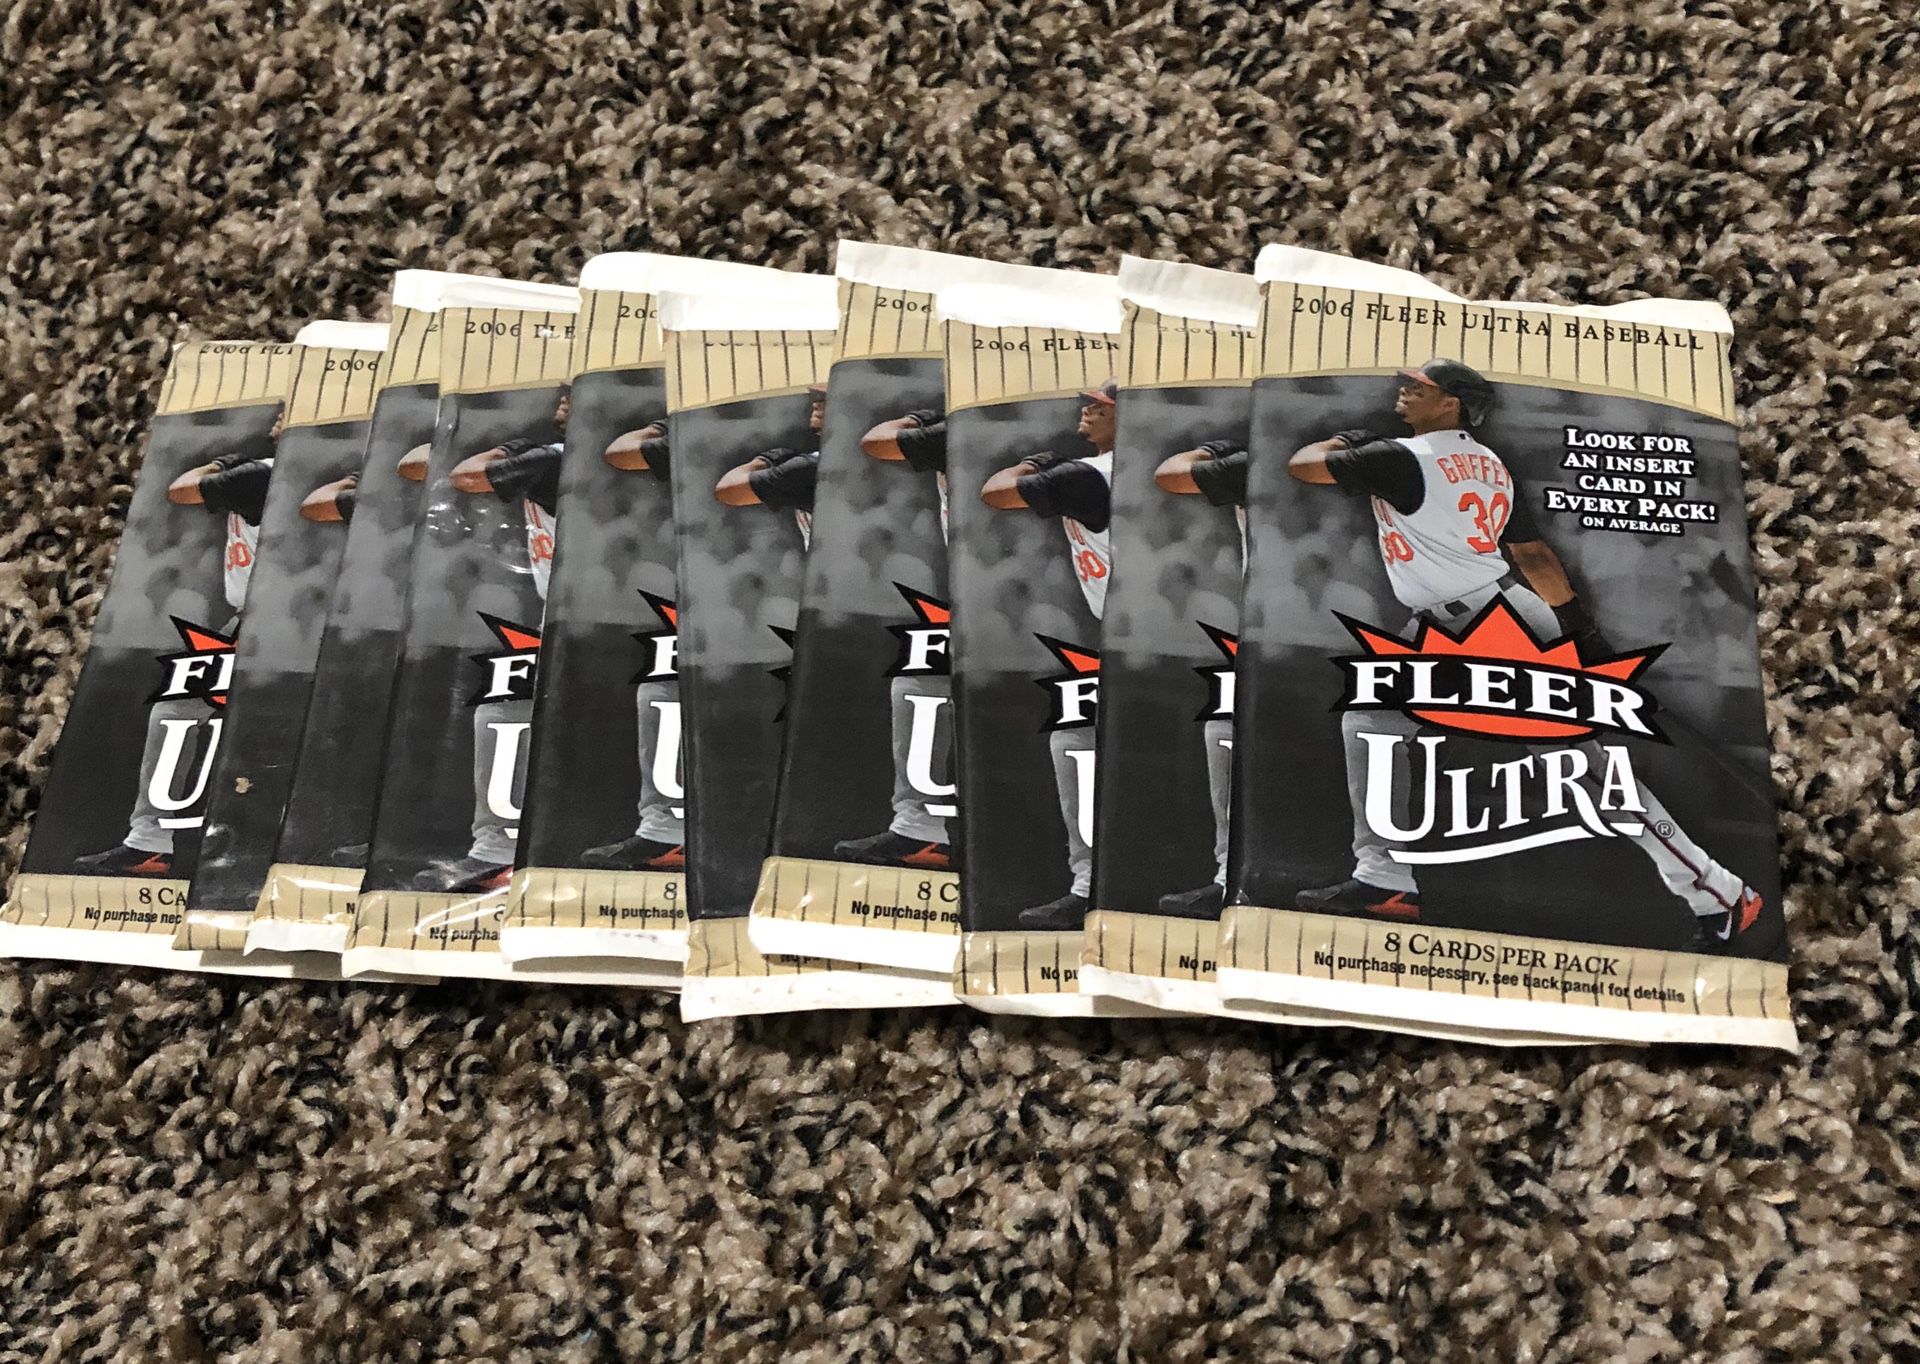 2006 Fleer Ultra baseball cards